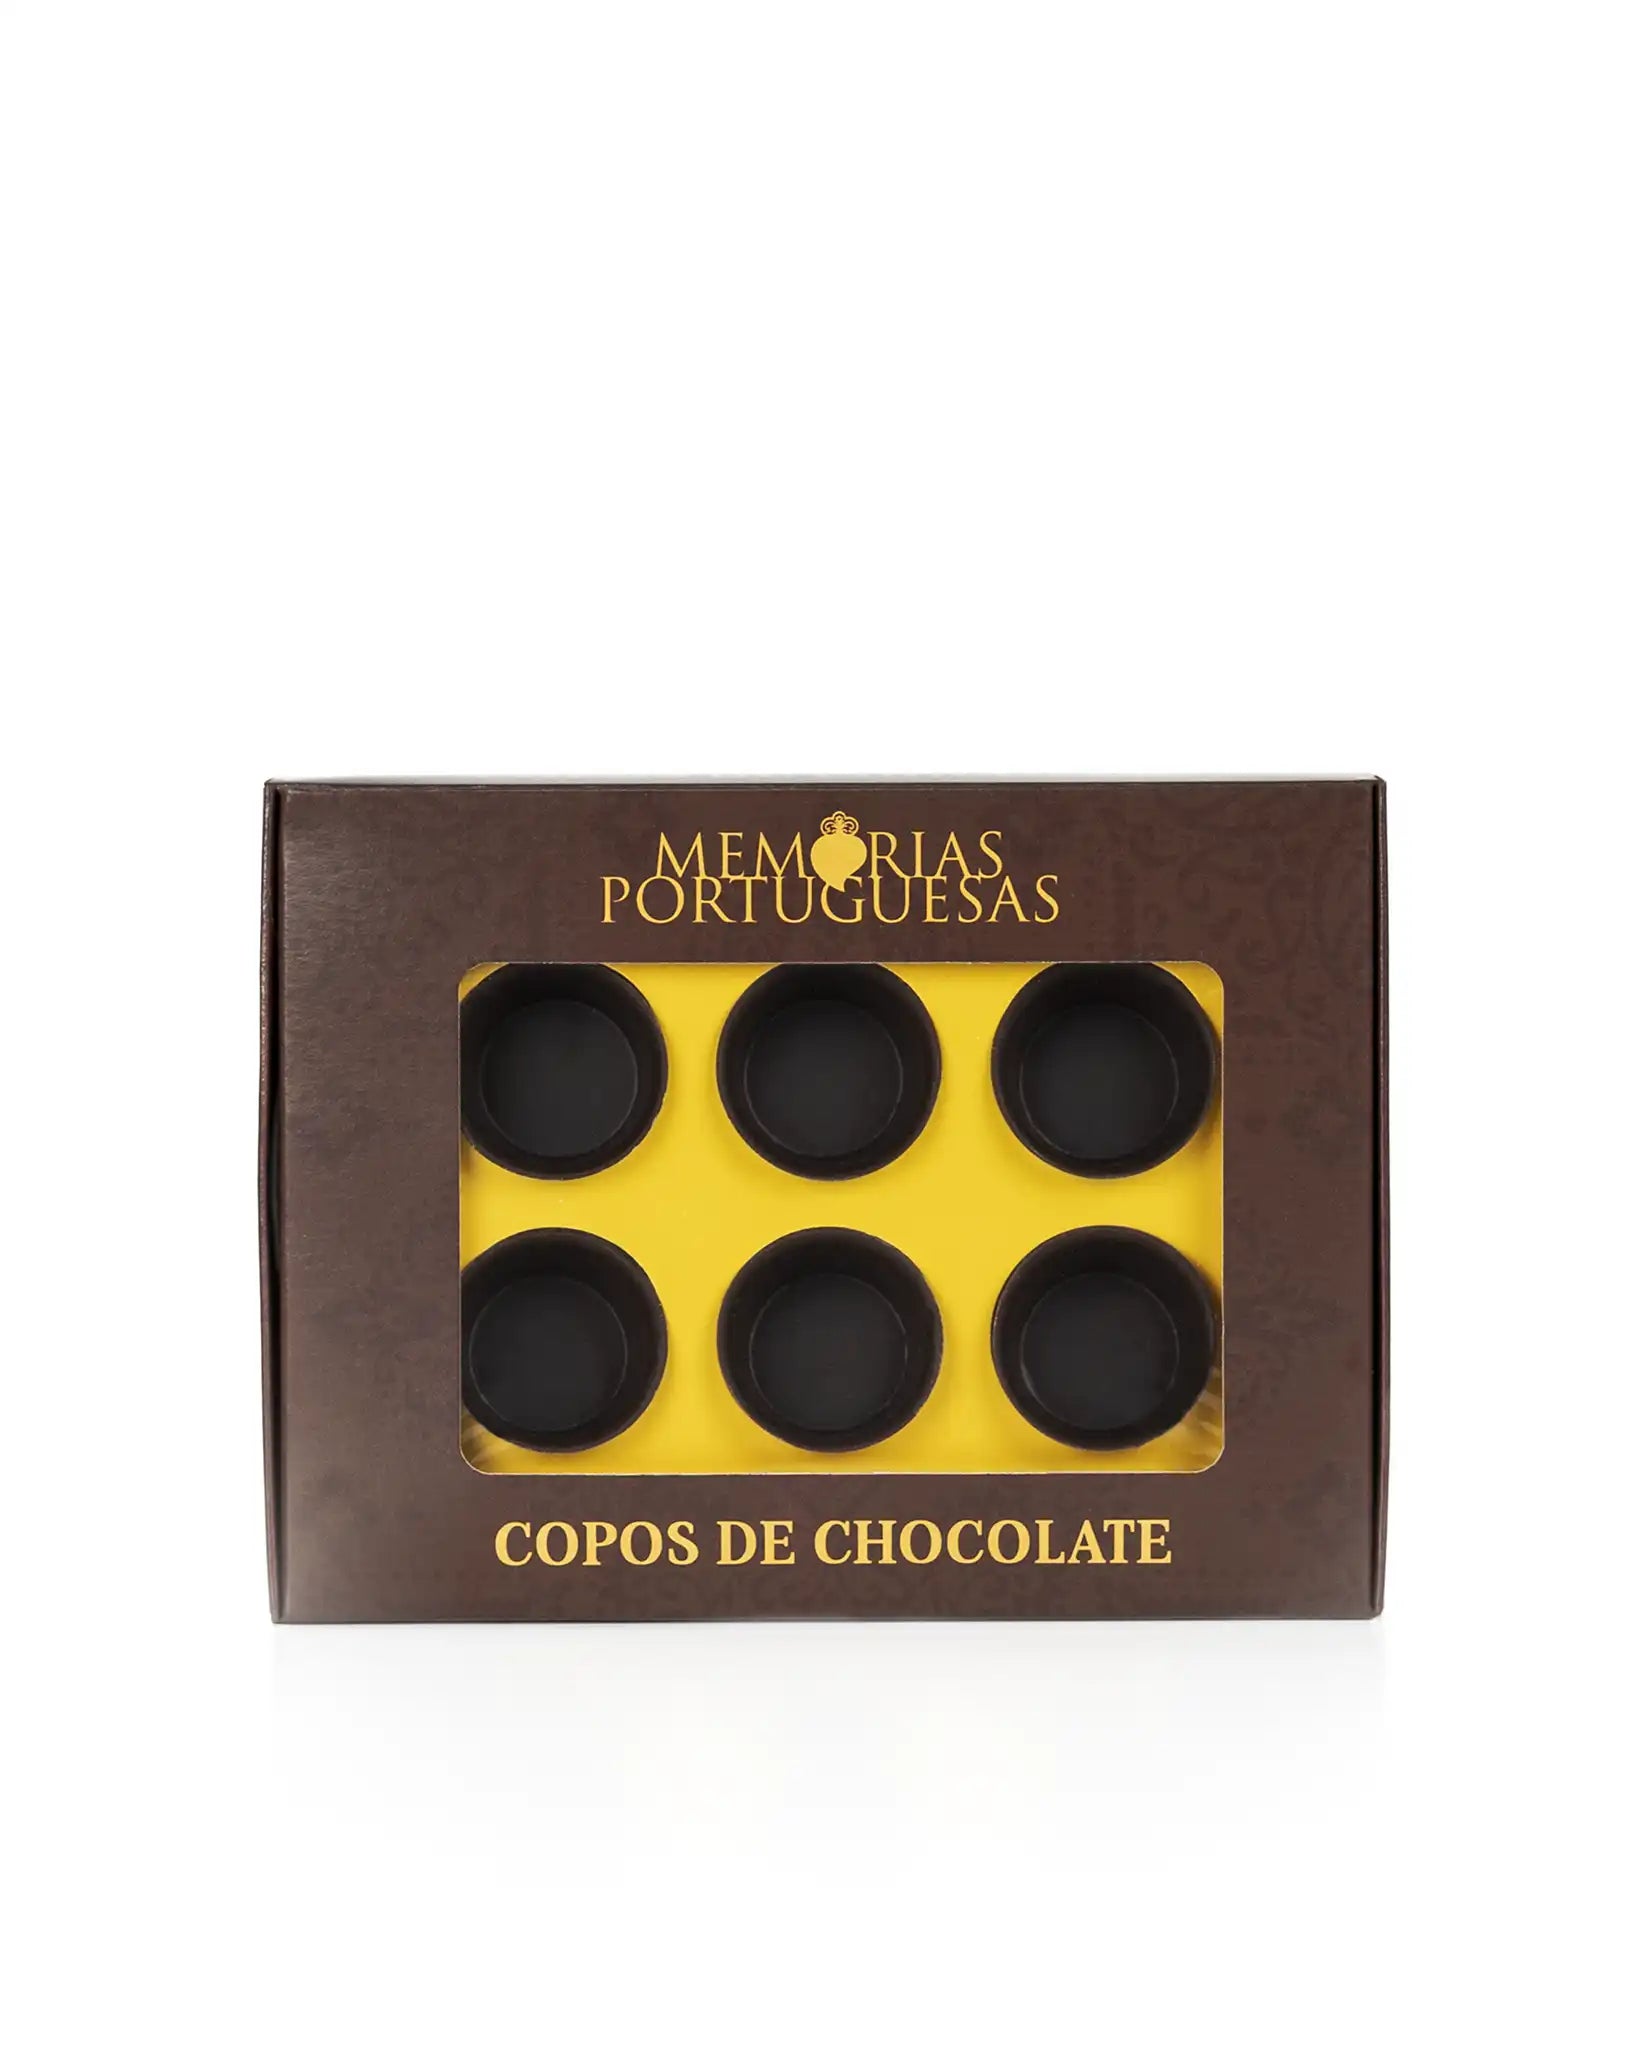 Copos de Chocolate Memórias Portuguesas 36g